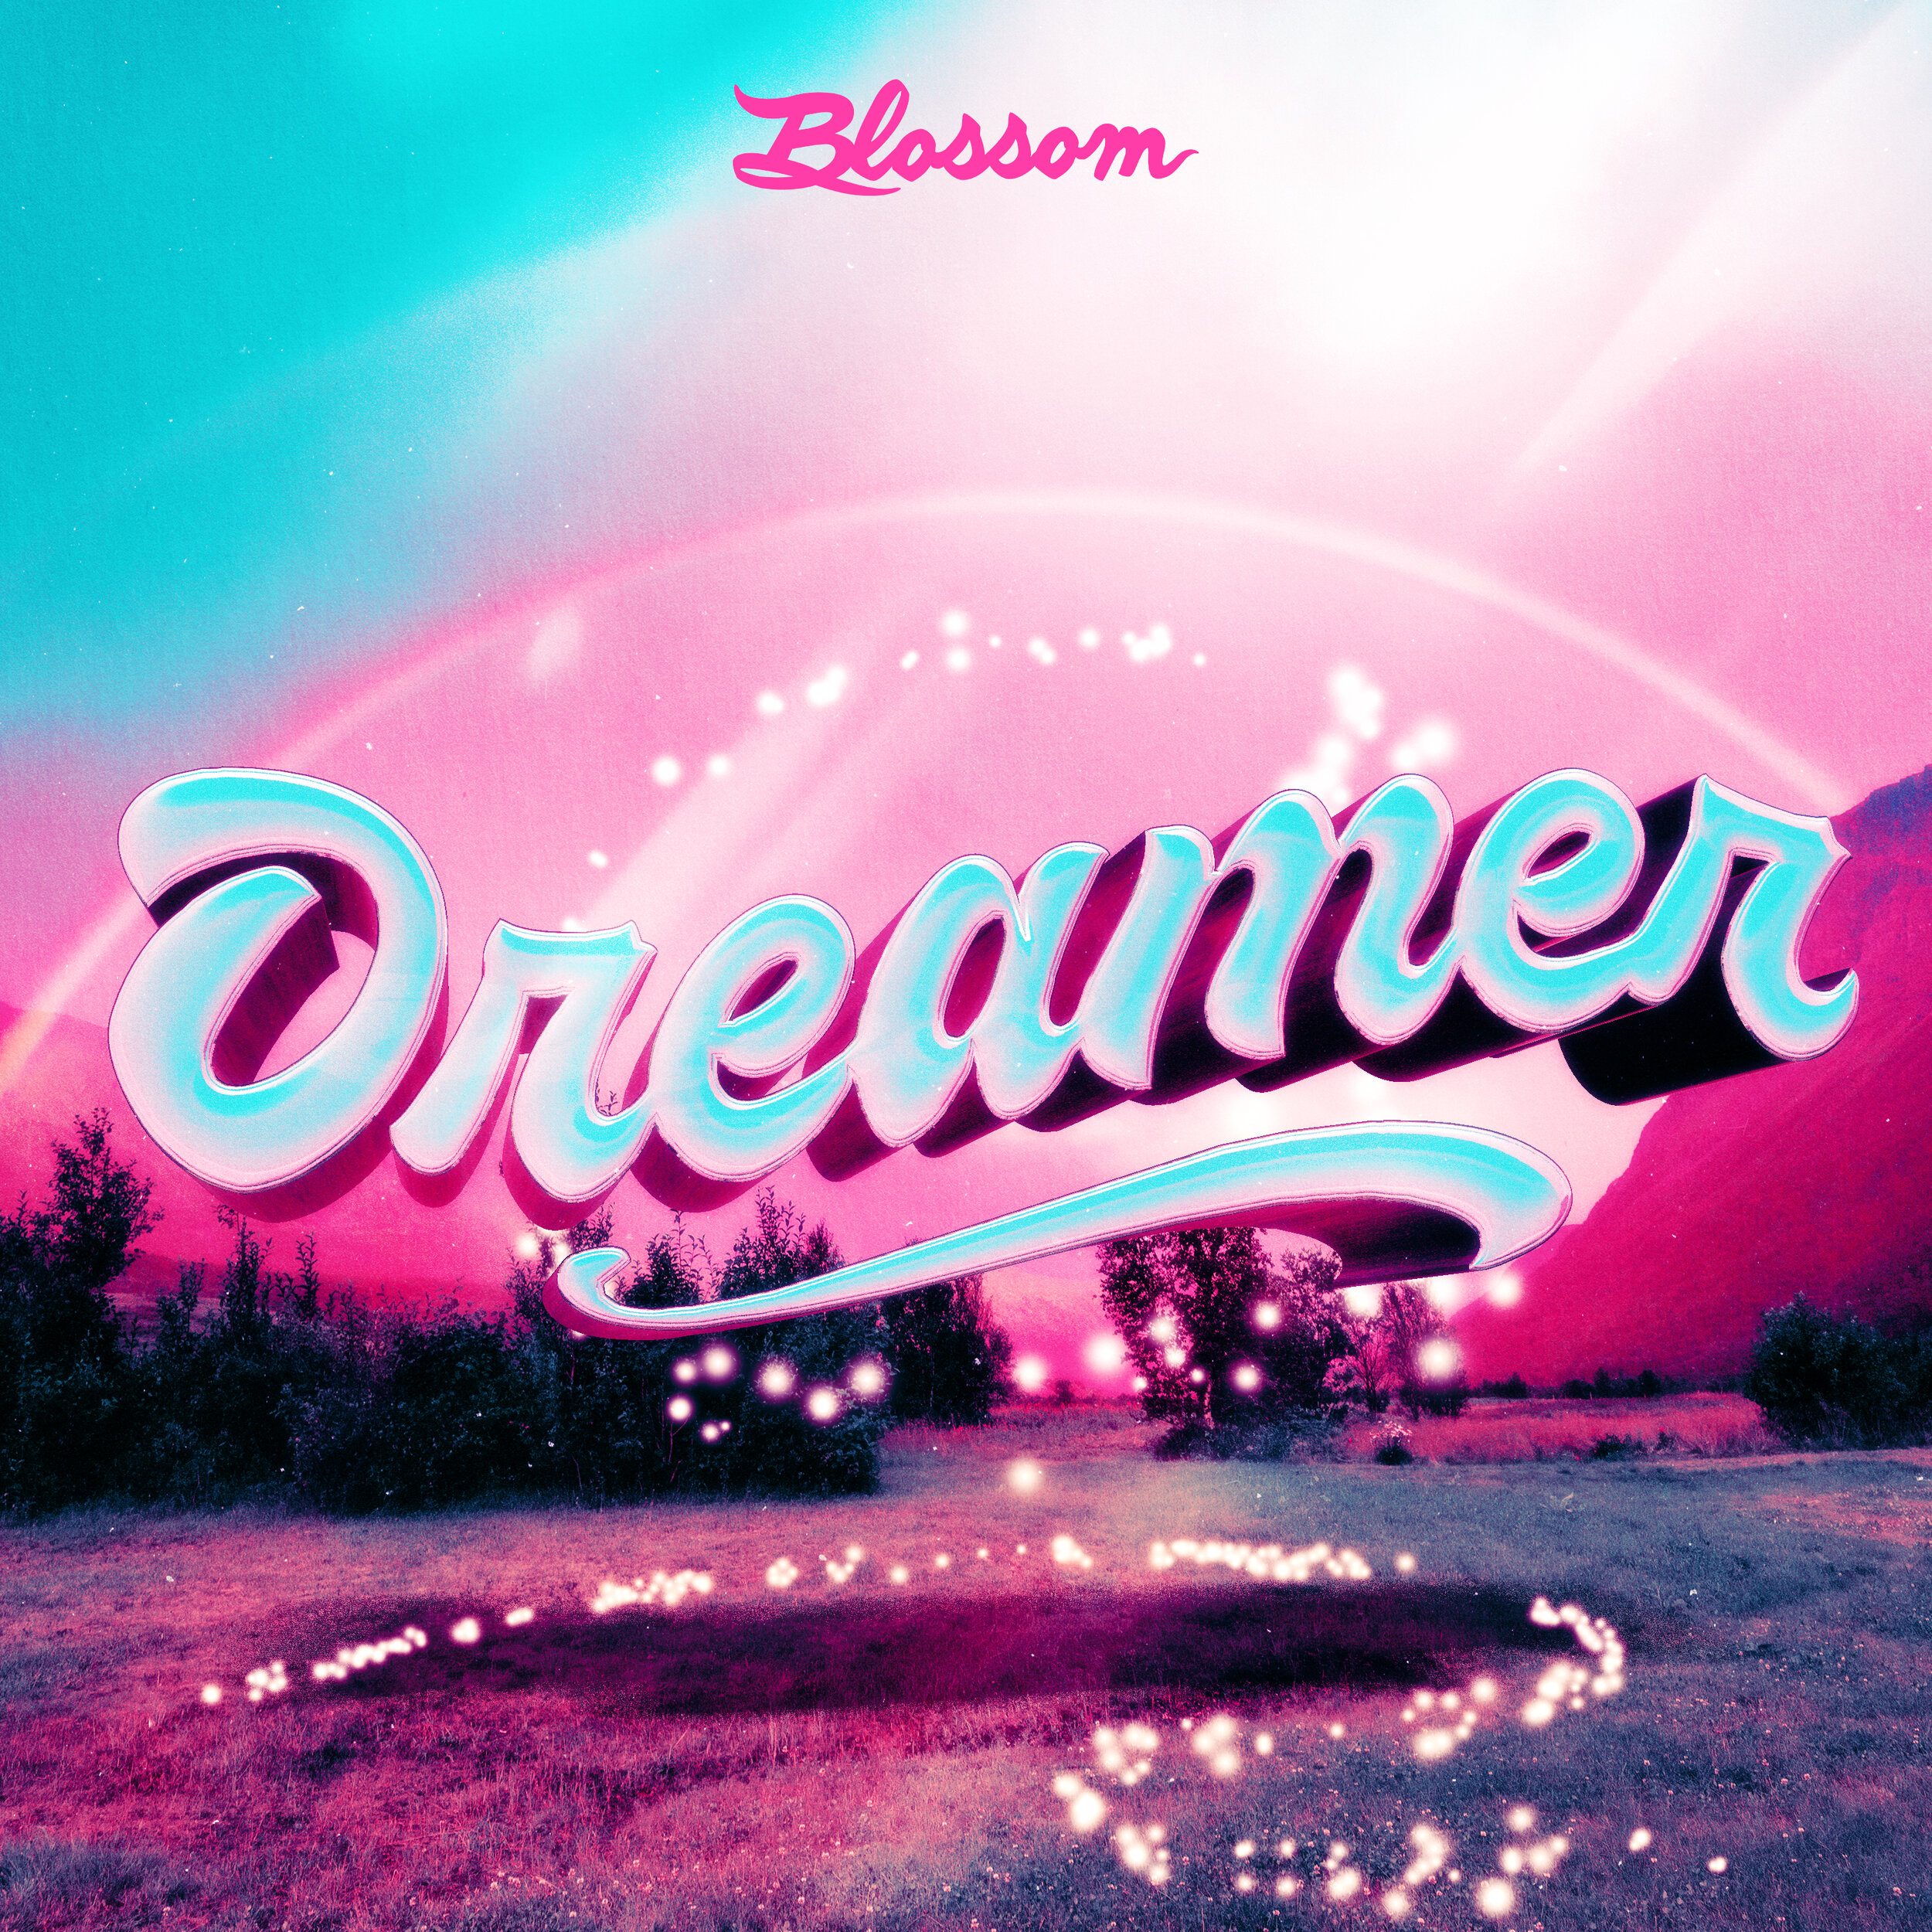 blossom-dreamer-v2.jpg